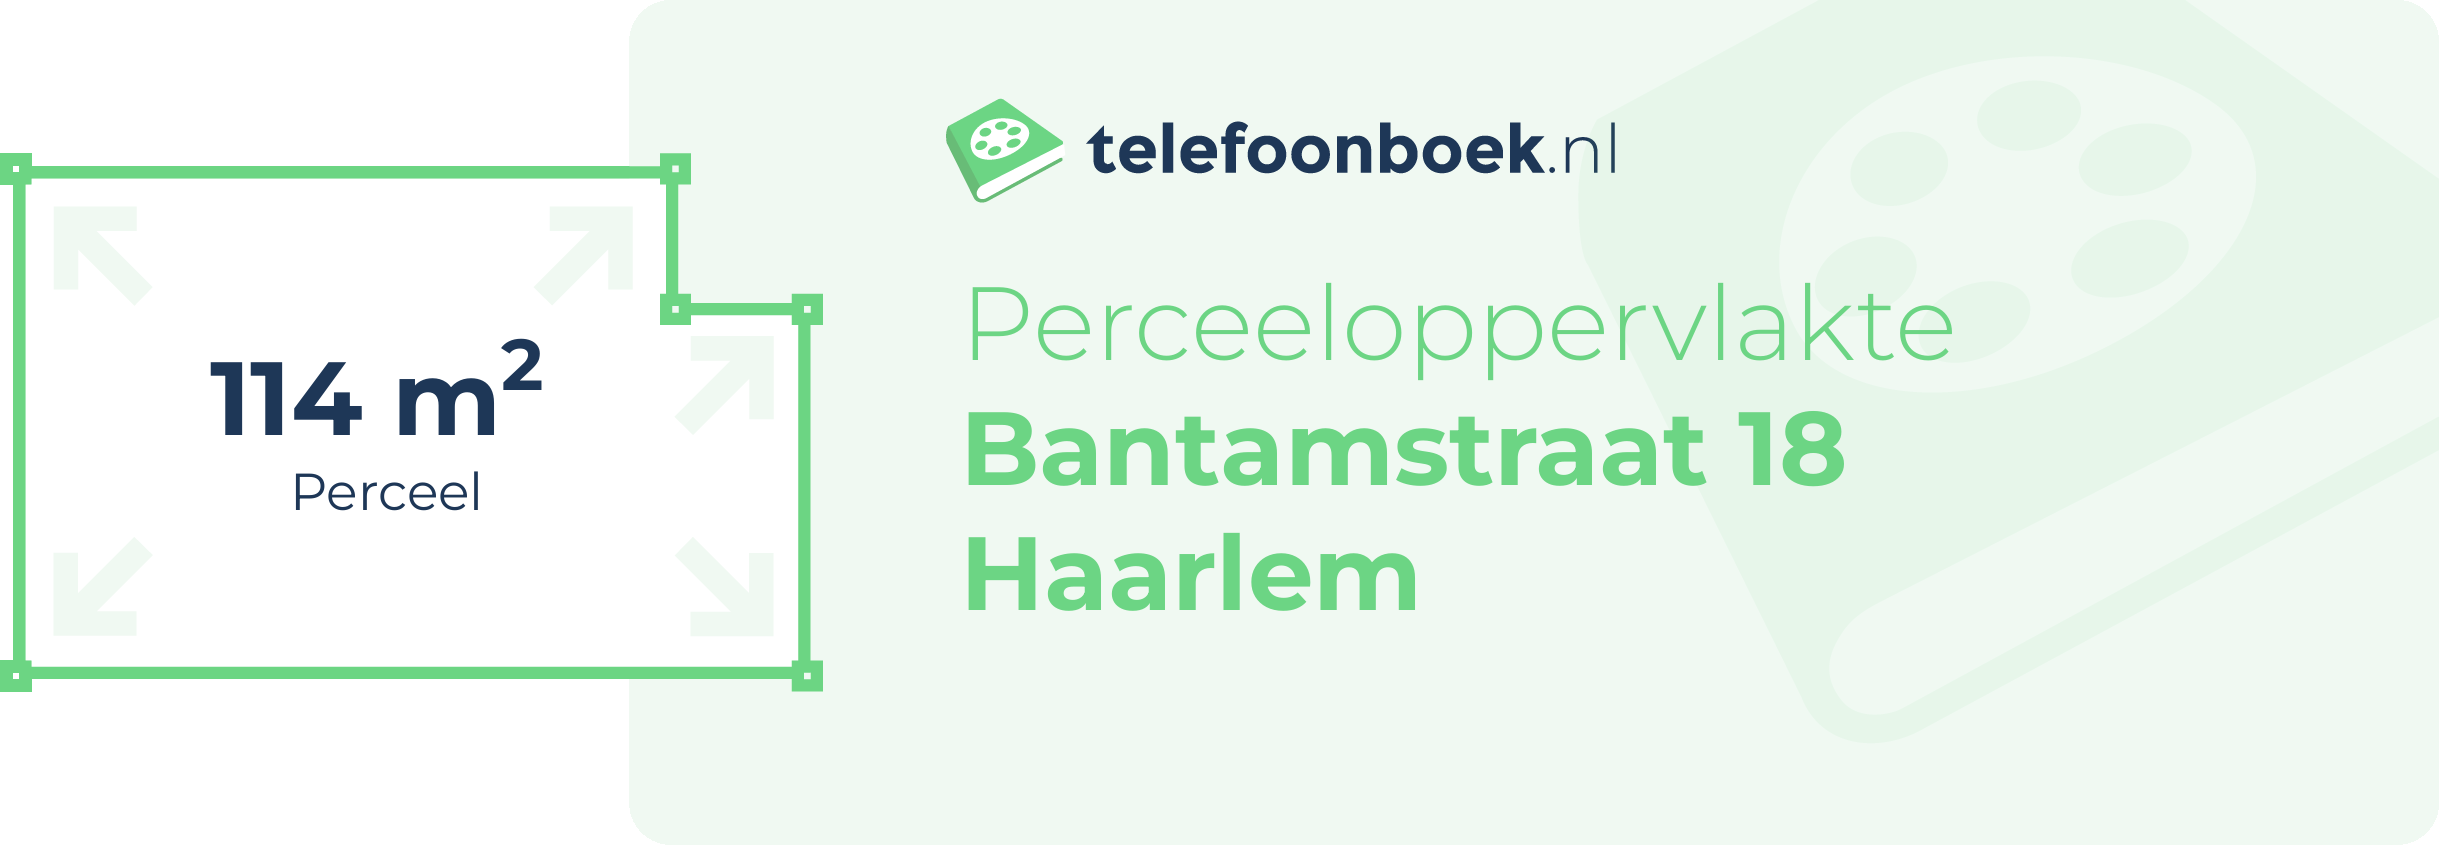 Perceeloppervlakte Bantamstraat 18 Haarlem